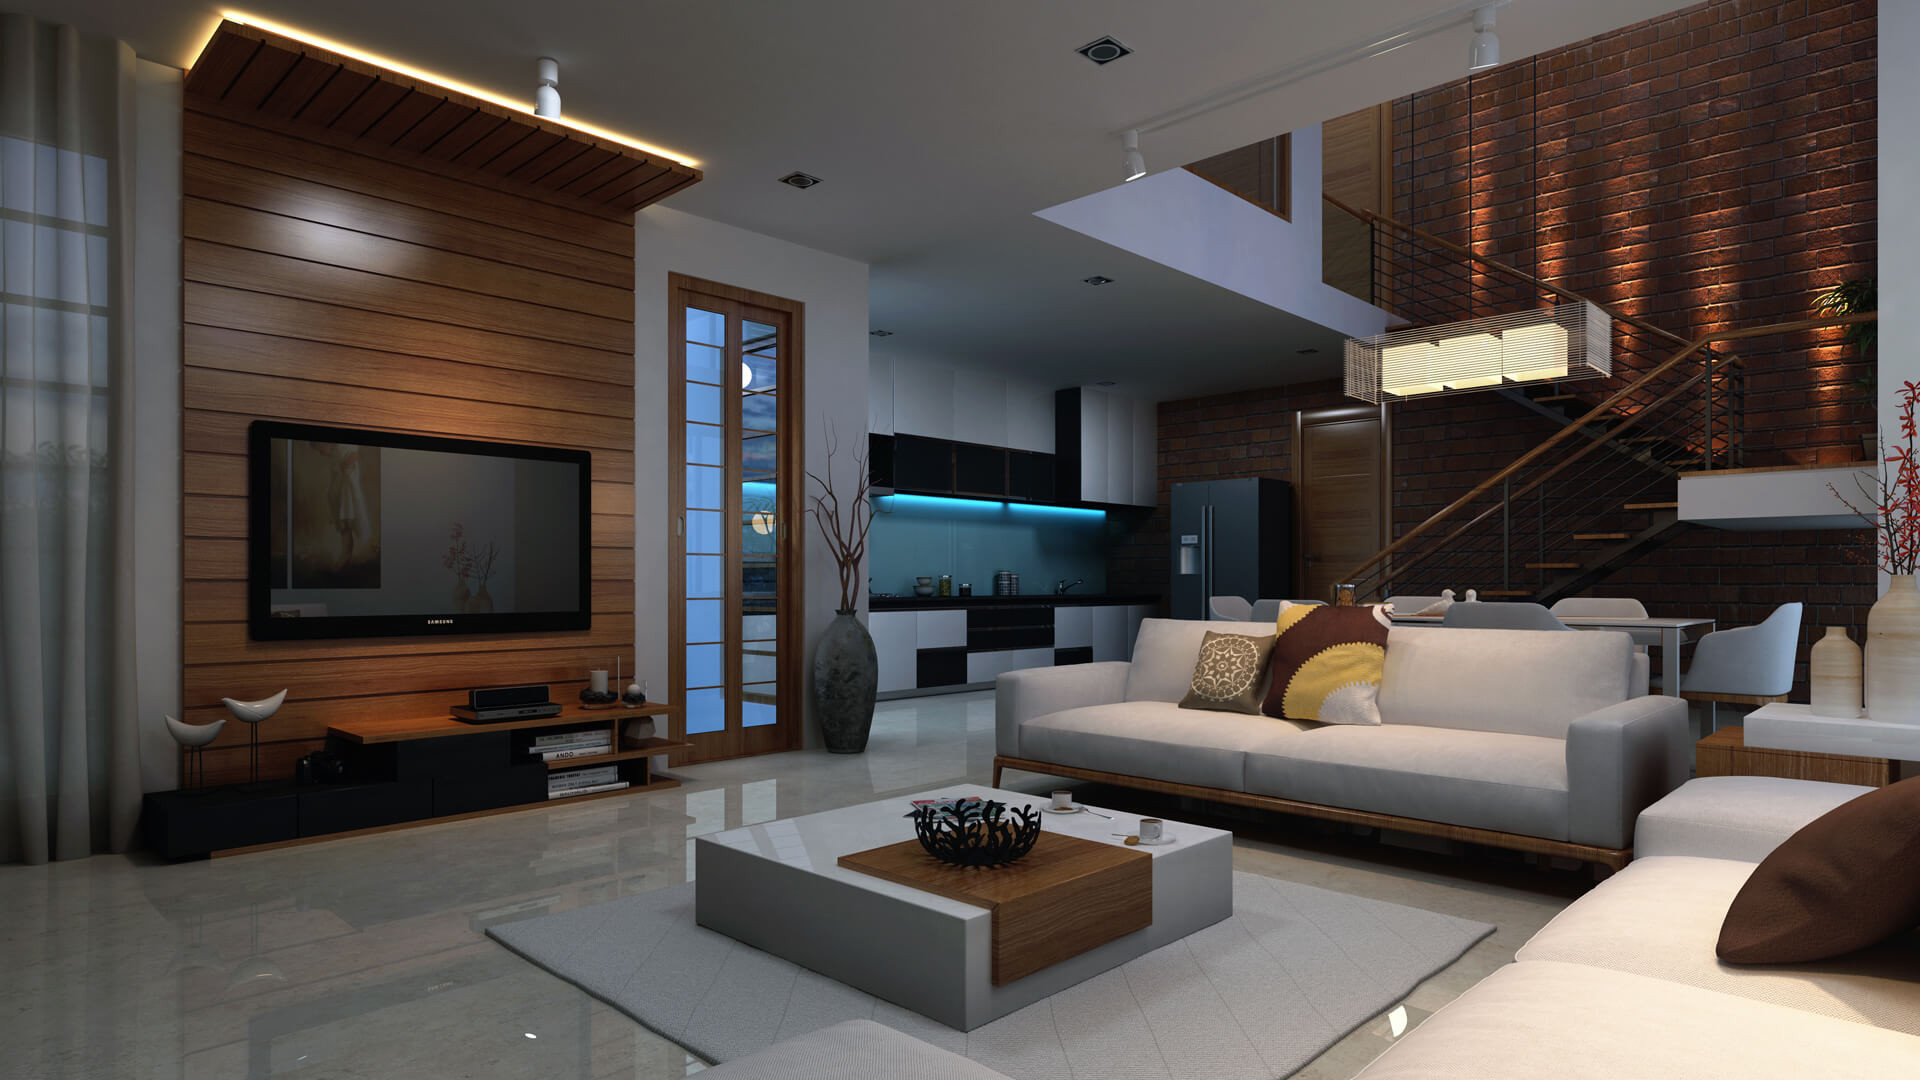 Living Room Interior Ideas
 3d interior design of home living room for holidays